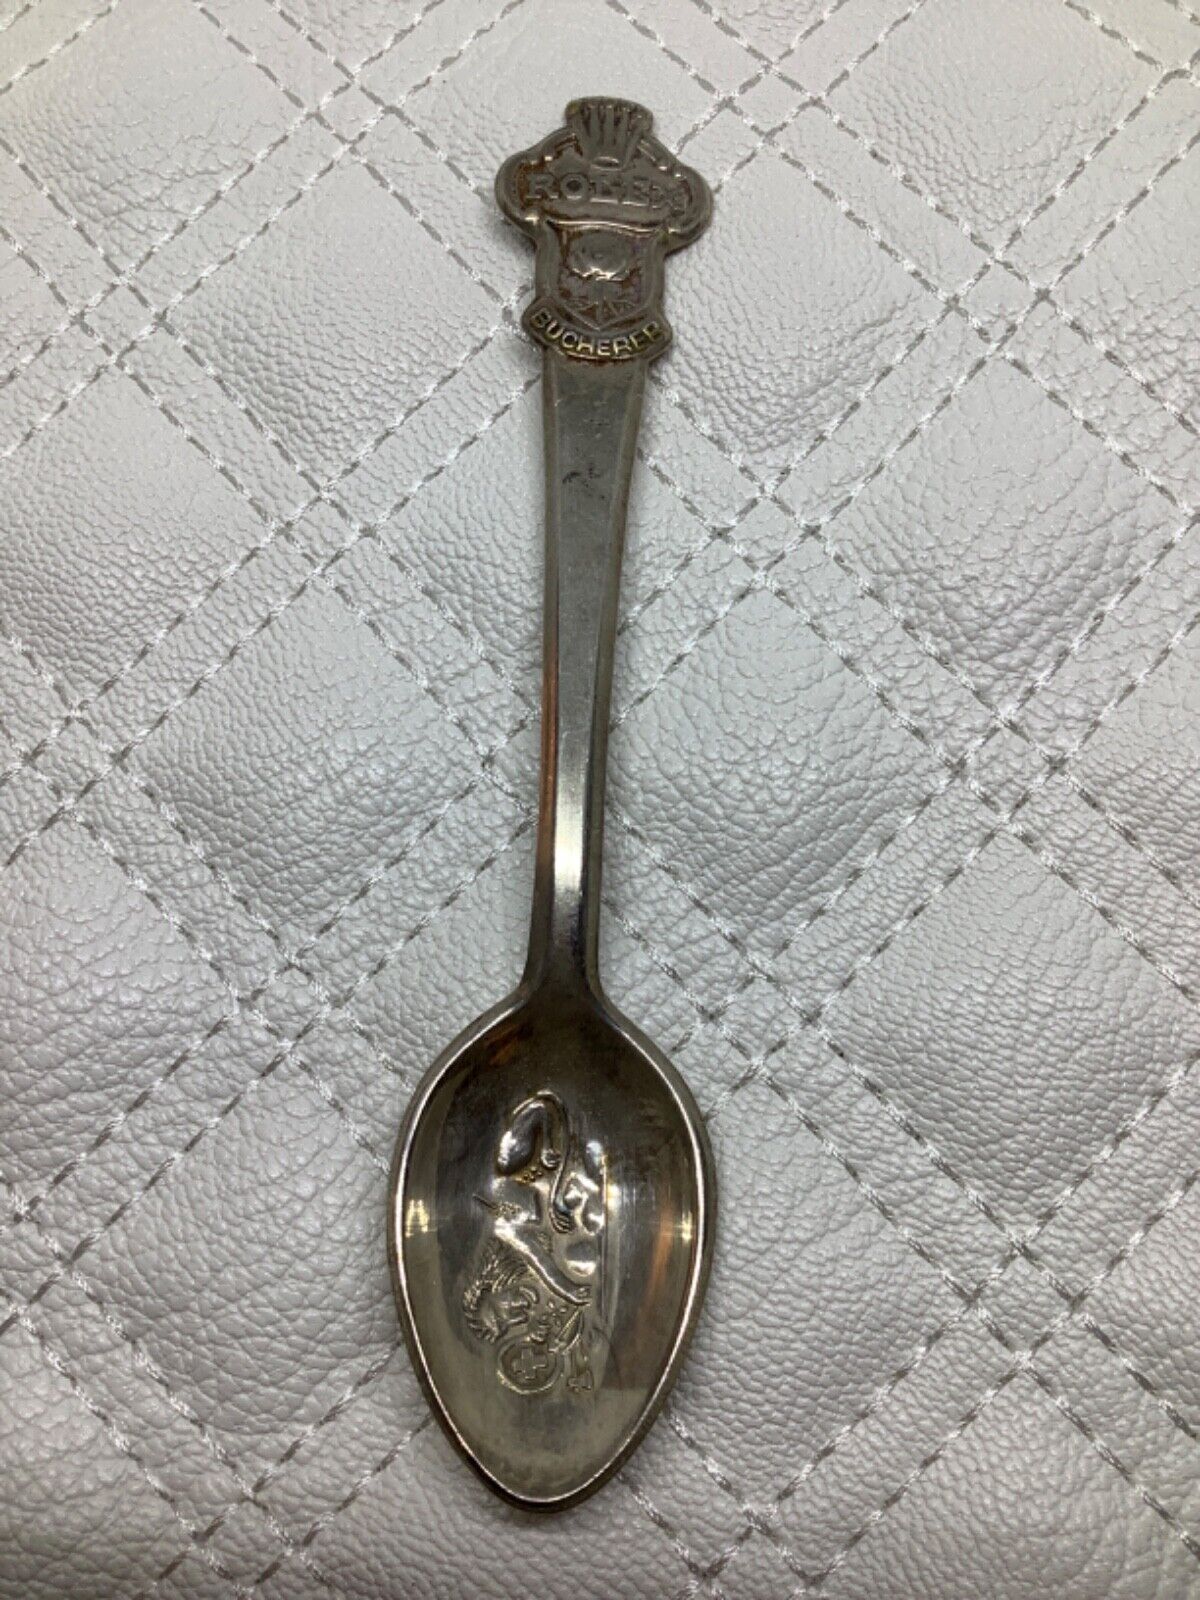 Vintage Rolex Souvenir Spoon Lion Crown Bucherer of Switzerland Small